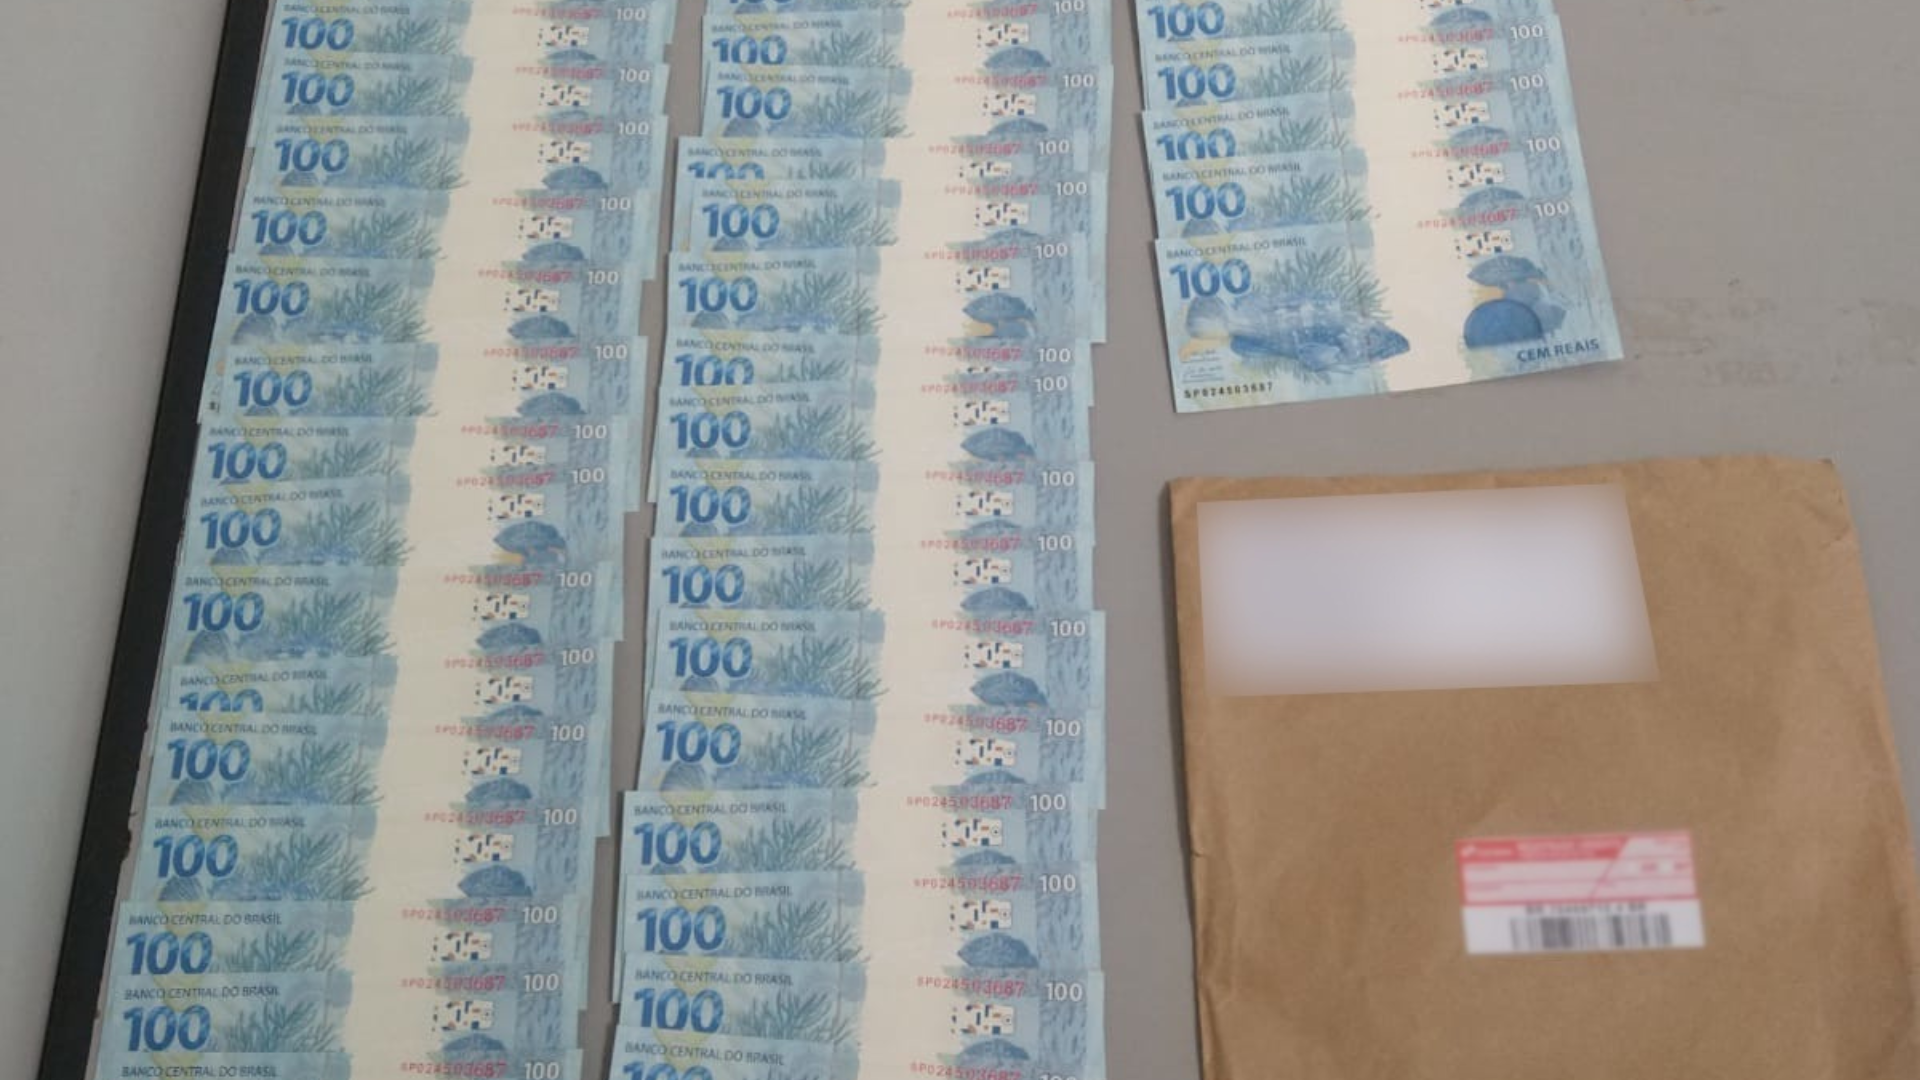 Apreensão em flagrante foi realizada na tarde de sexta-feira (20) pela Polícia Federal; dentro do envelope recebido nos Correios havia R$ 5 mil em notas falsas